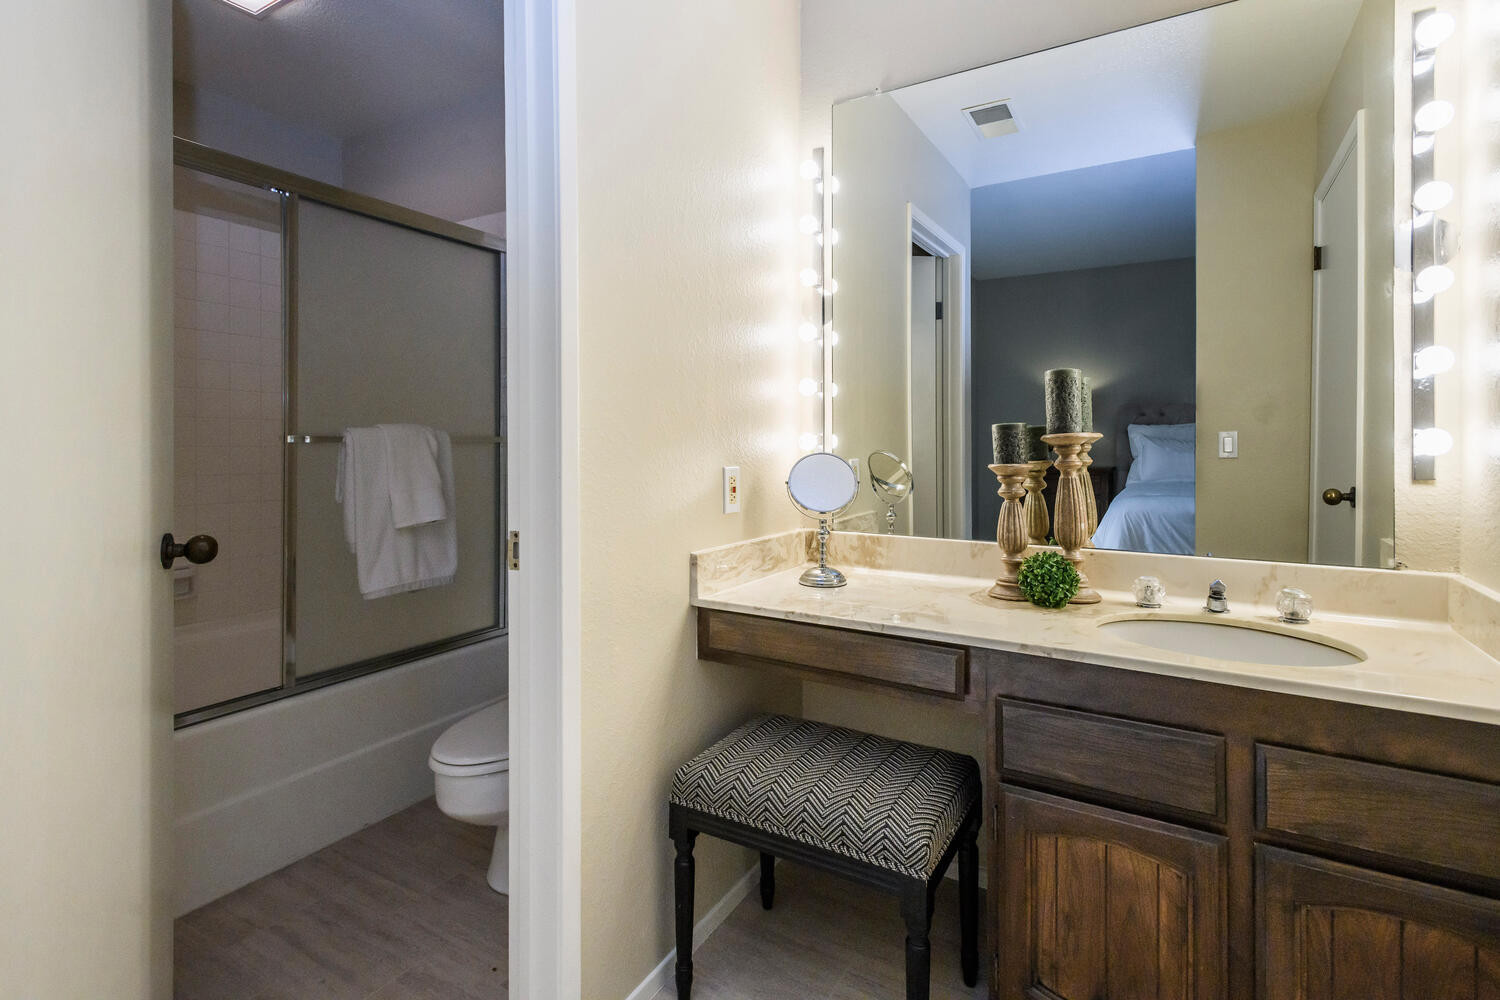 111 9th Avenue Bathroom Vanity in Hayward Park Area in San Mateo.